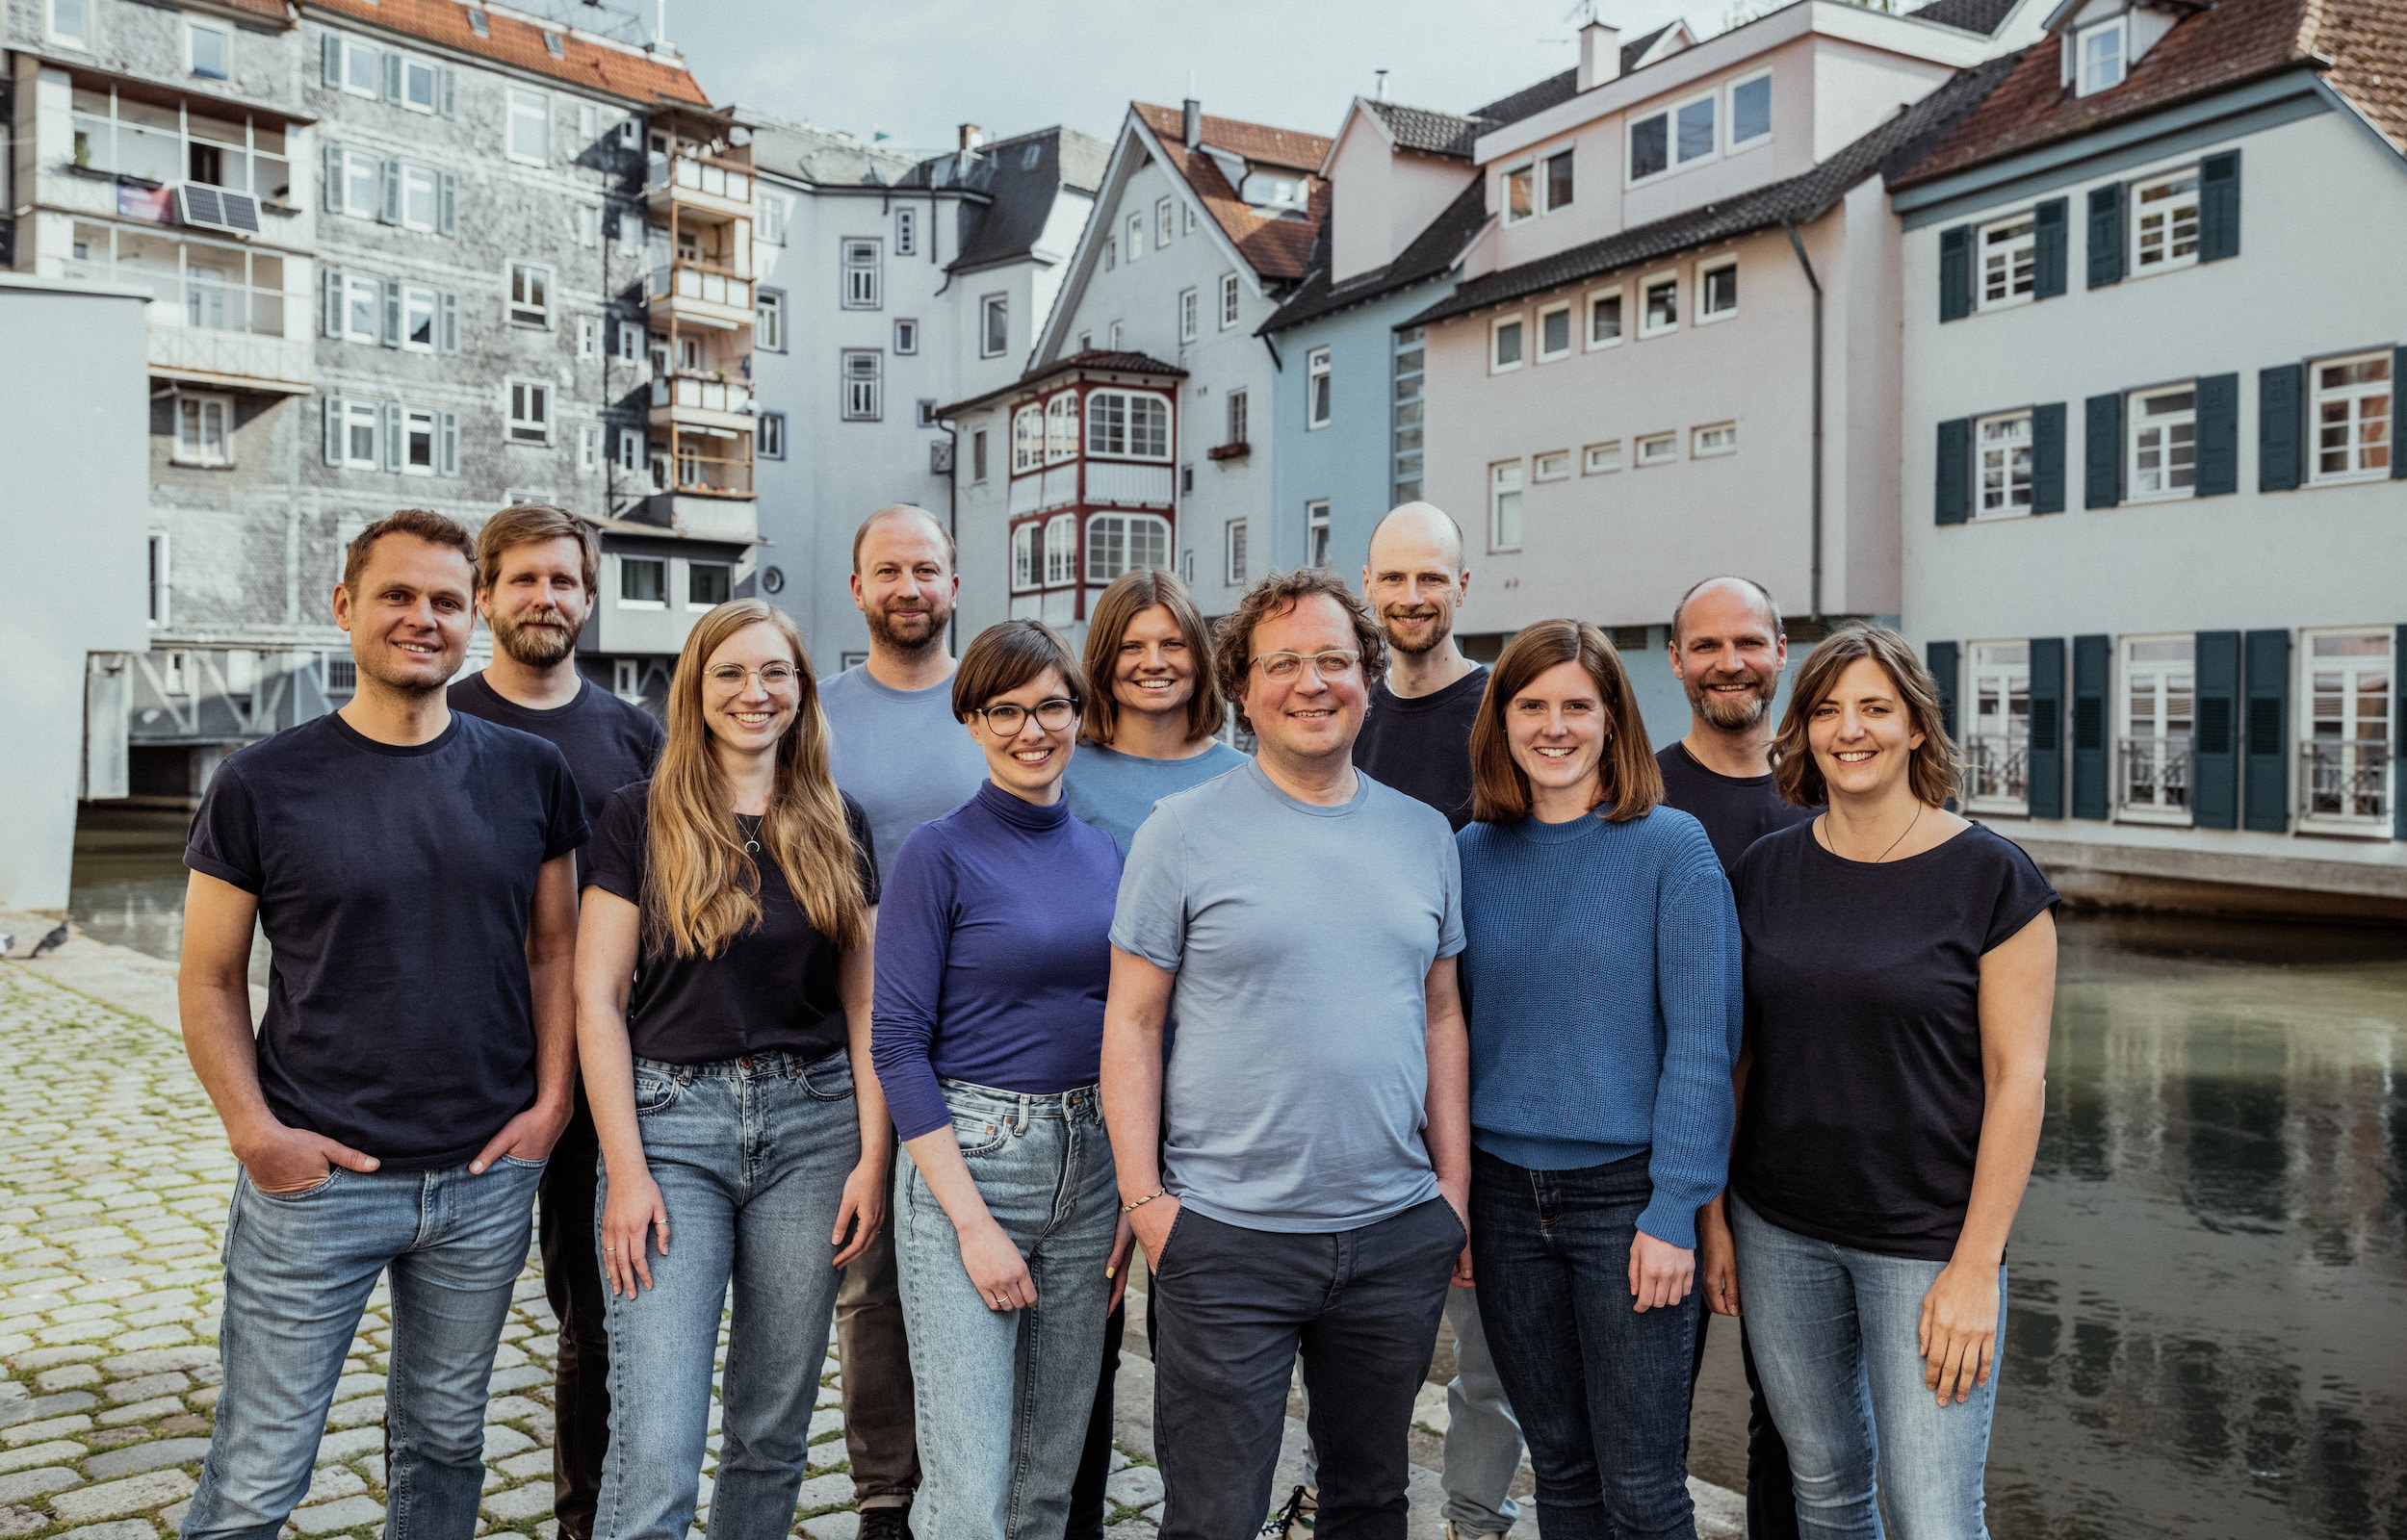 Foto mit dem Agenturteam, die 12 Personen lachen fröhlich, stehen als Gruppe am Ufer des Neckarkanals in der Esslinger Innenstadt, im Hintergrund ist das historische Häuserensemble, welches zu Esslingens Klein Venedig zählt